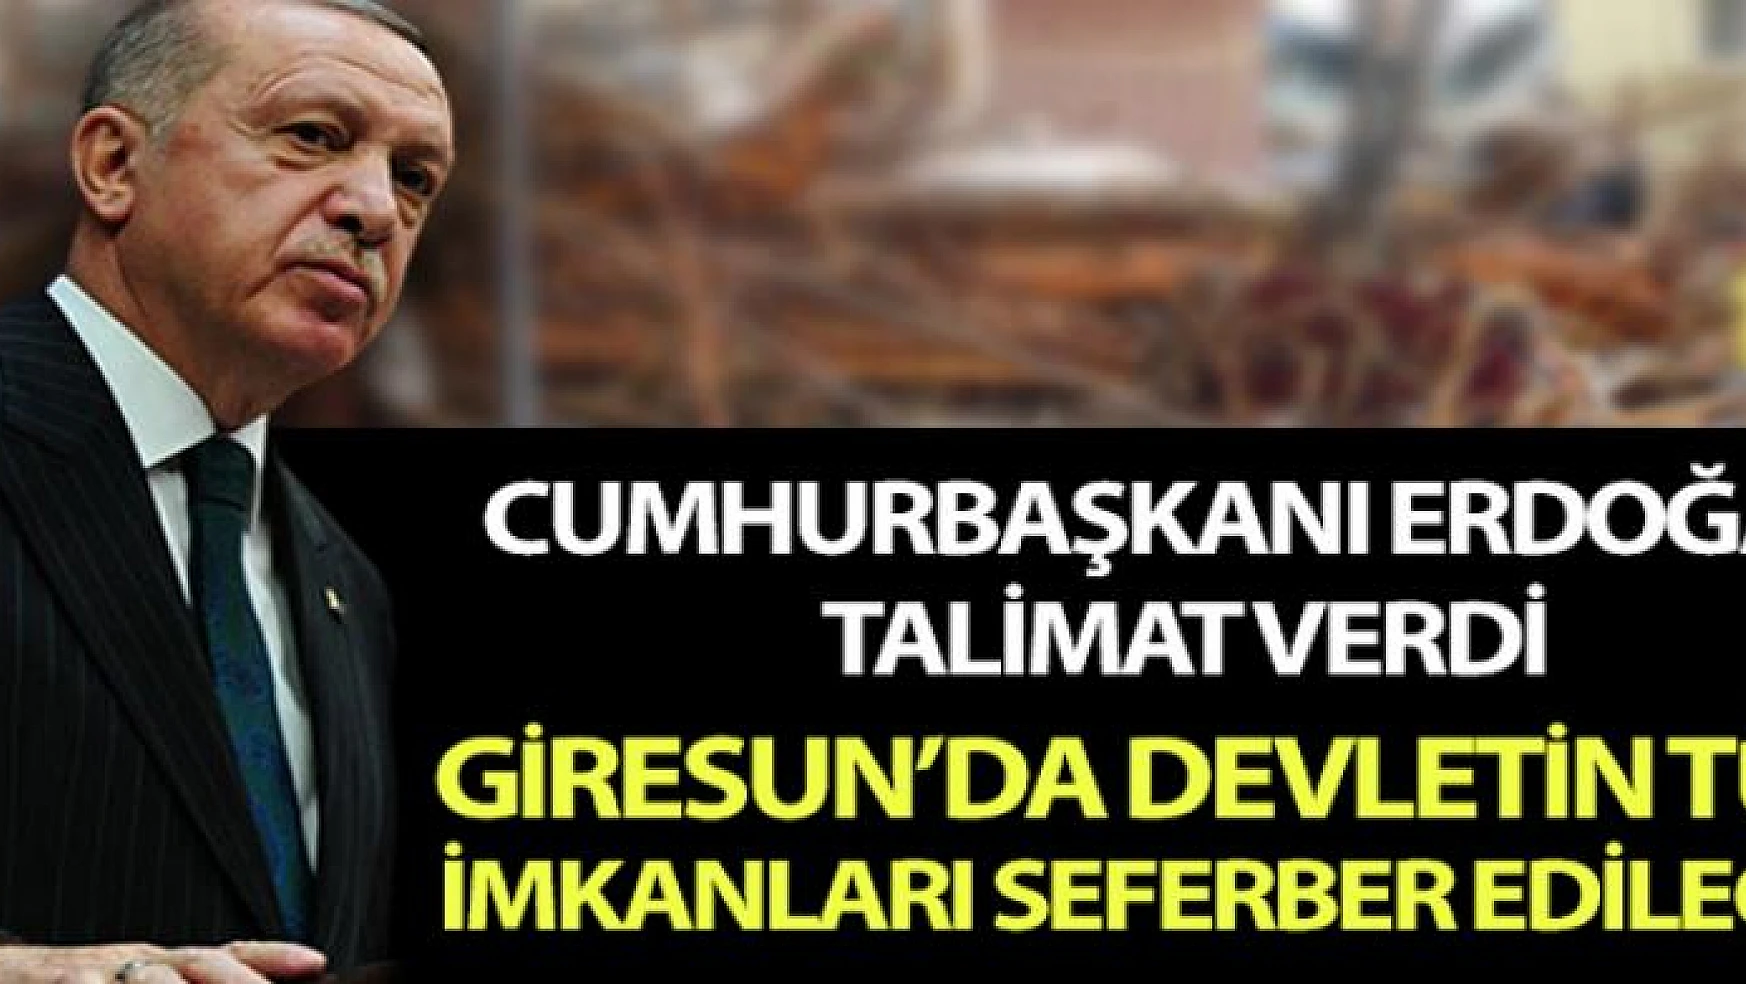 Cumhurbaşkanı Erdoğan, Giresun'da devletin tüm imkanlarının seferber edilmesi talimatını verdi